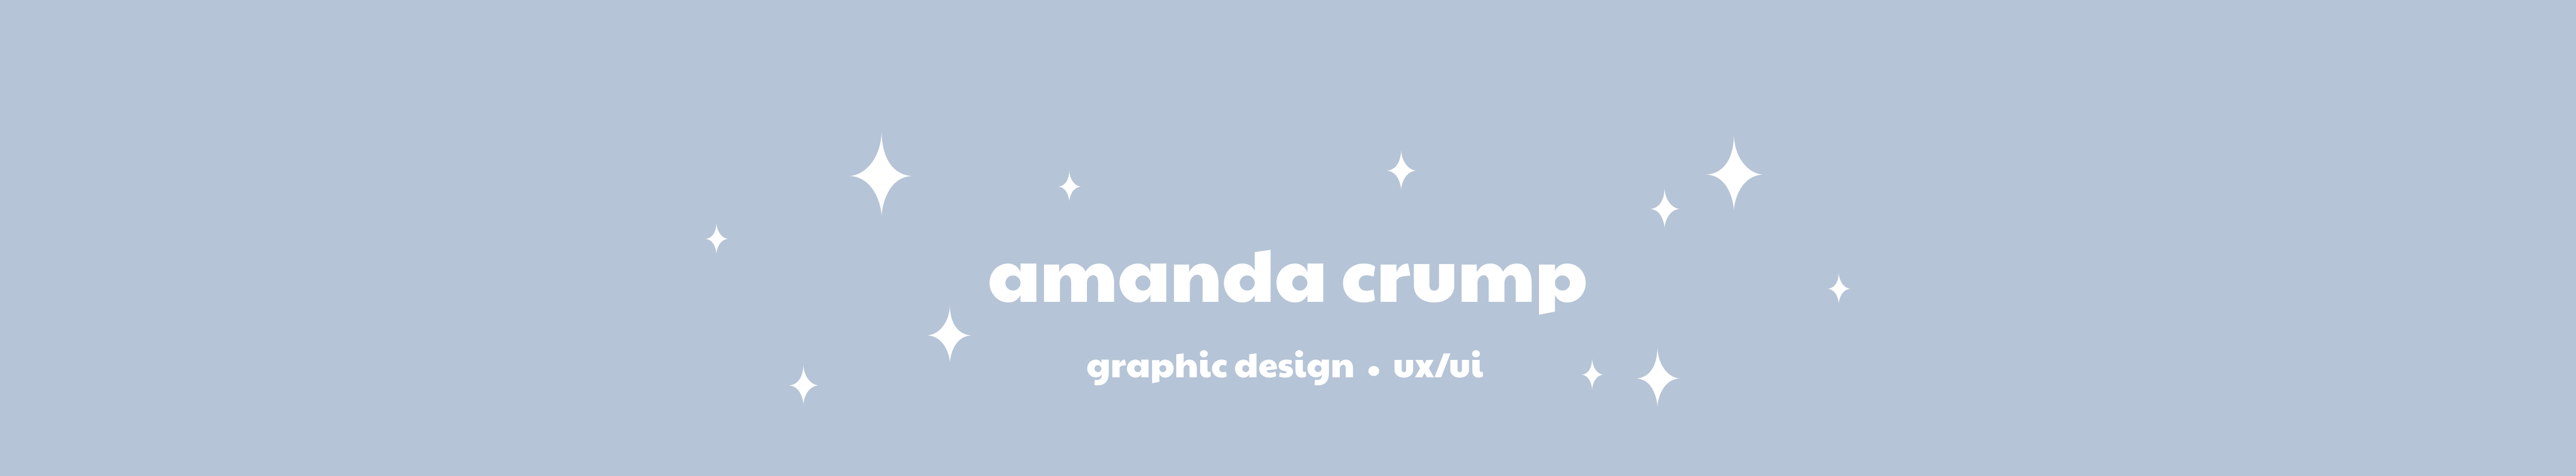 Banner de perfil de Amanda Crump